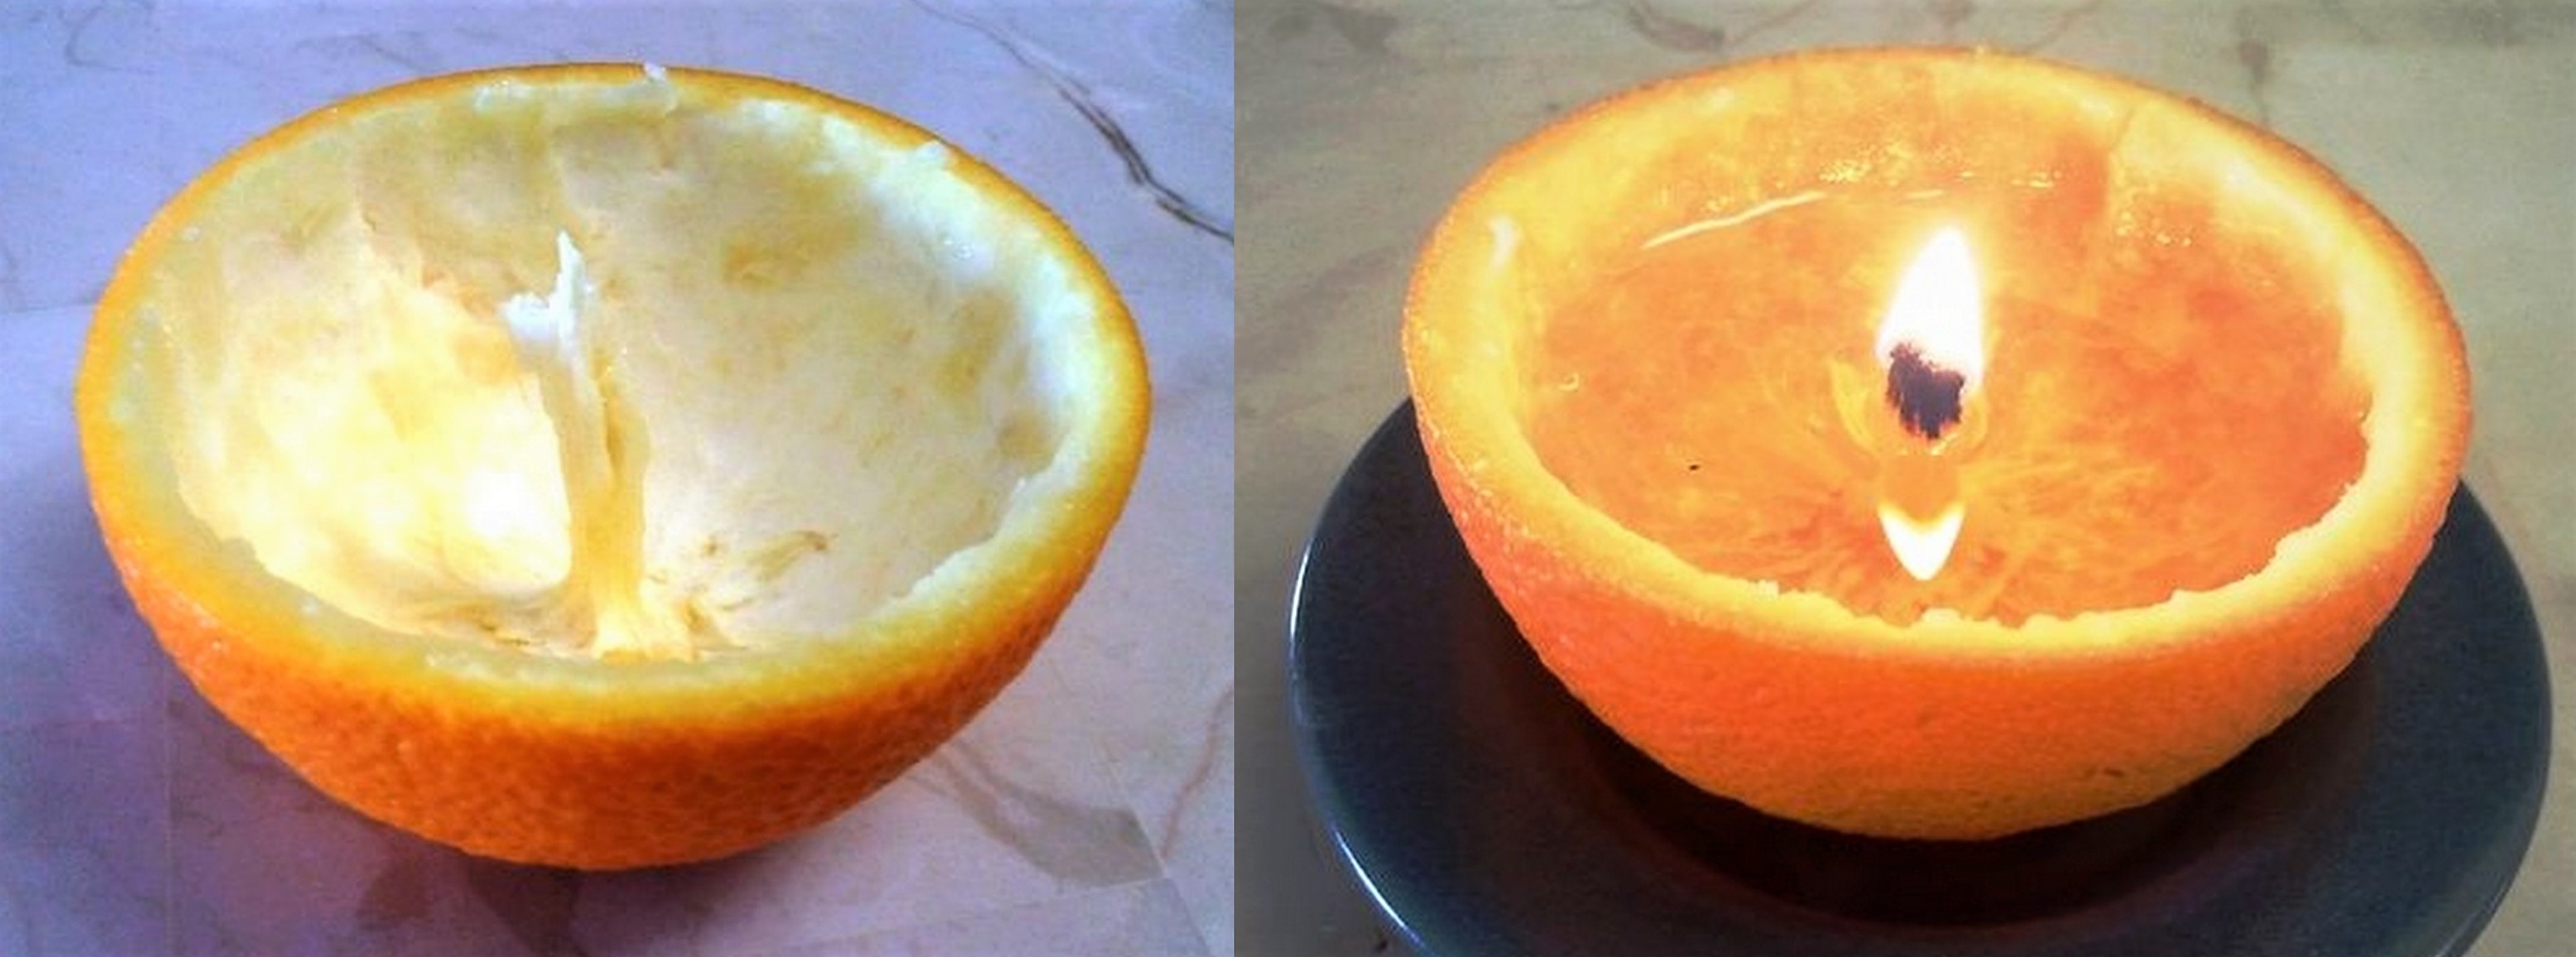 Astuces pour utiliser les peaux d'orange